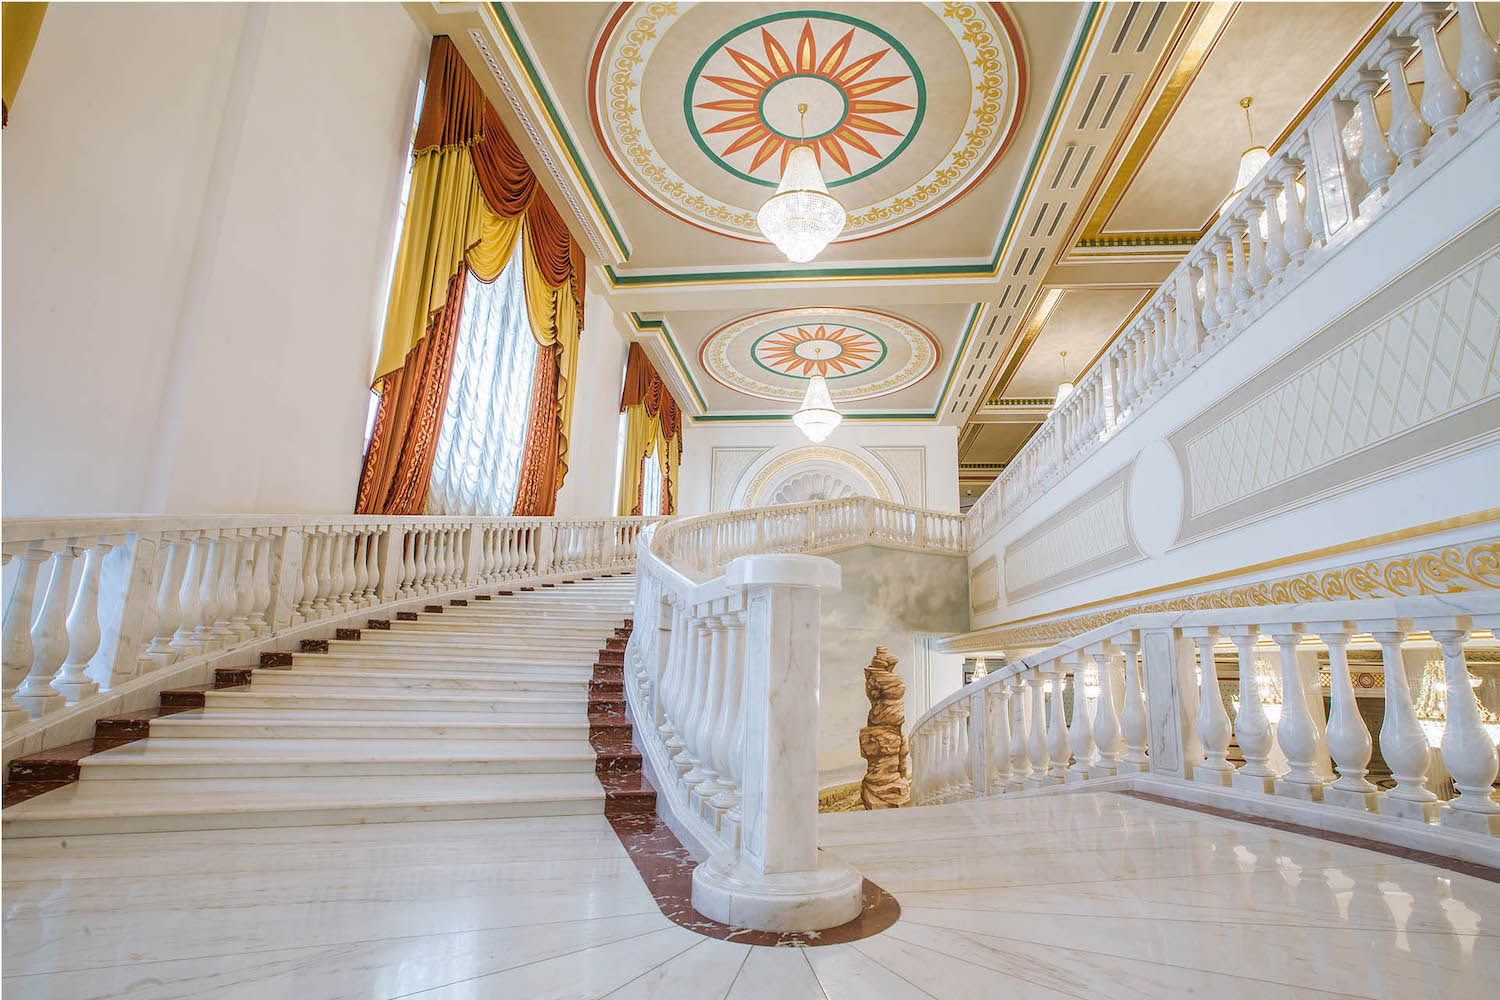 Public building, Noble House, St. Petersburg, Russia <br />Image copyright: @Decormarmi